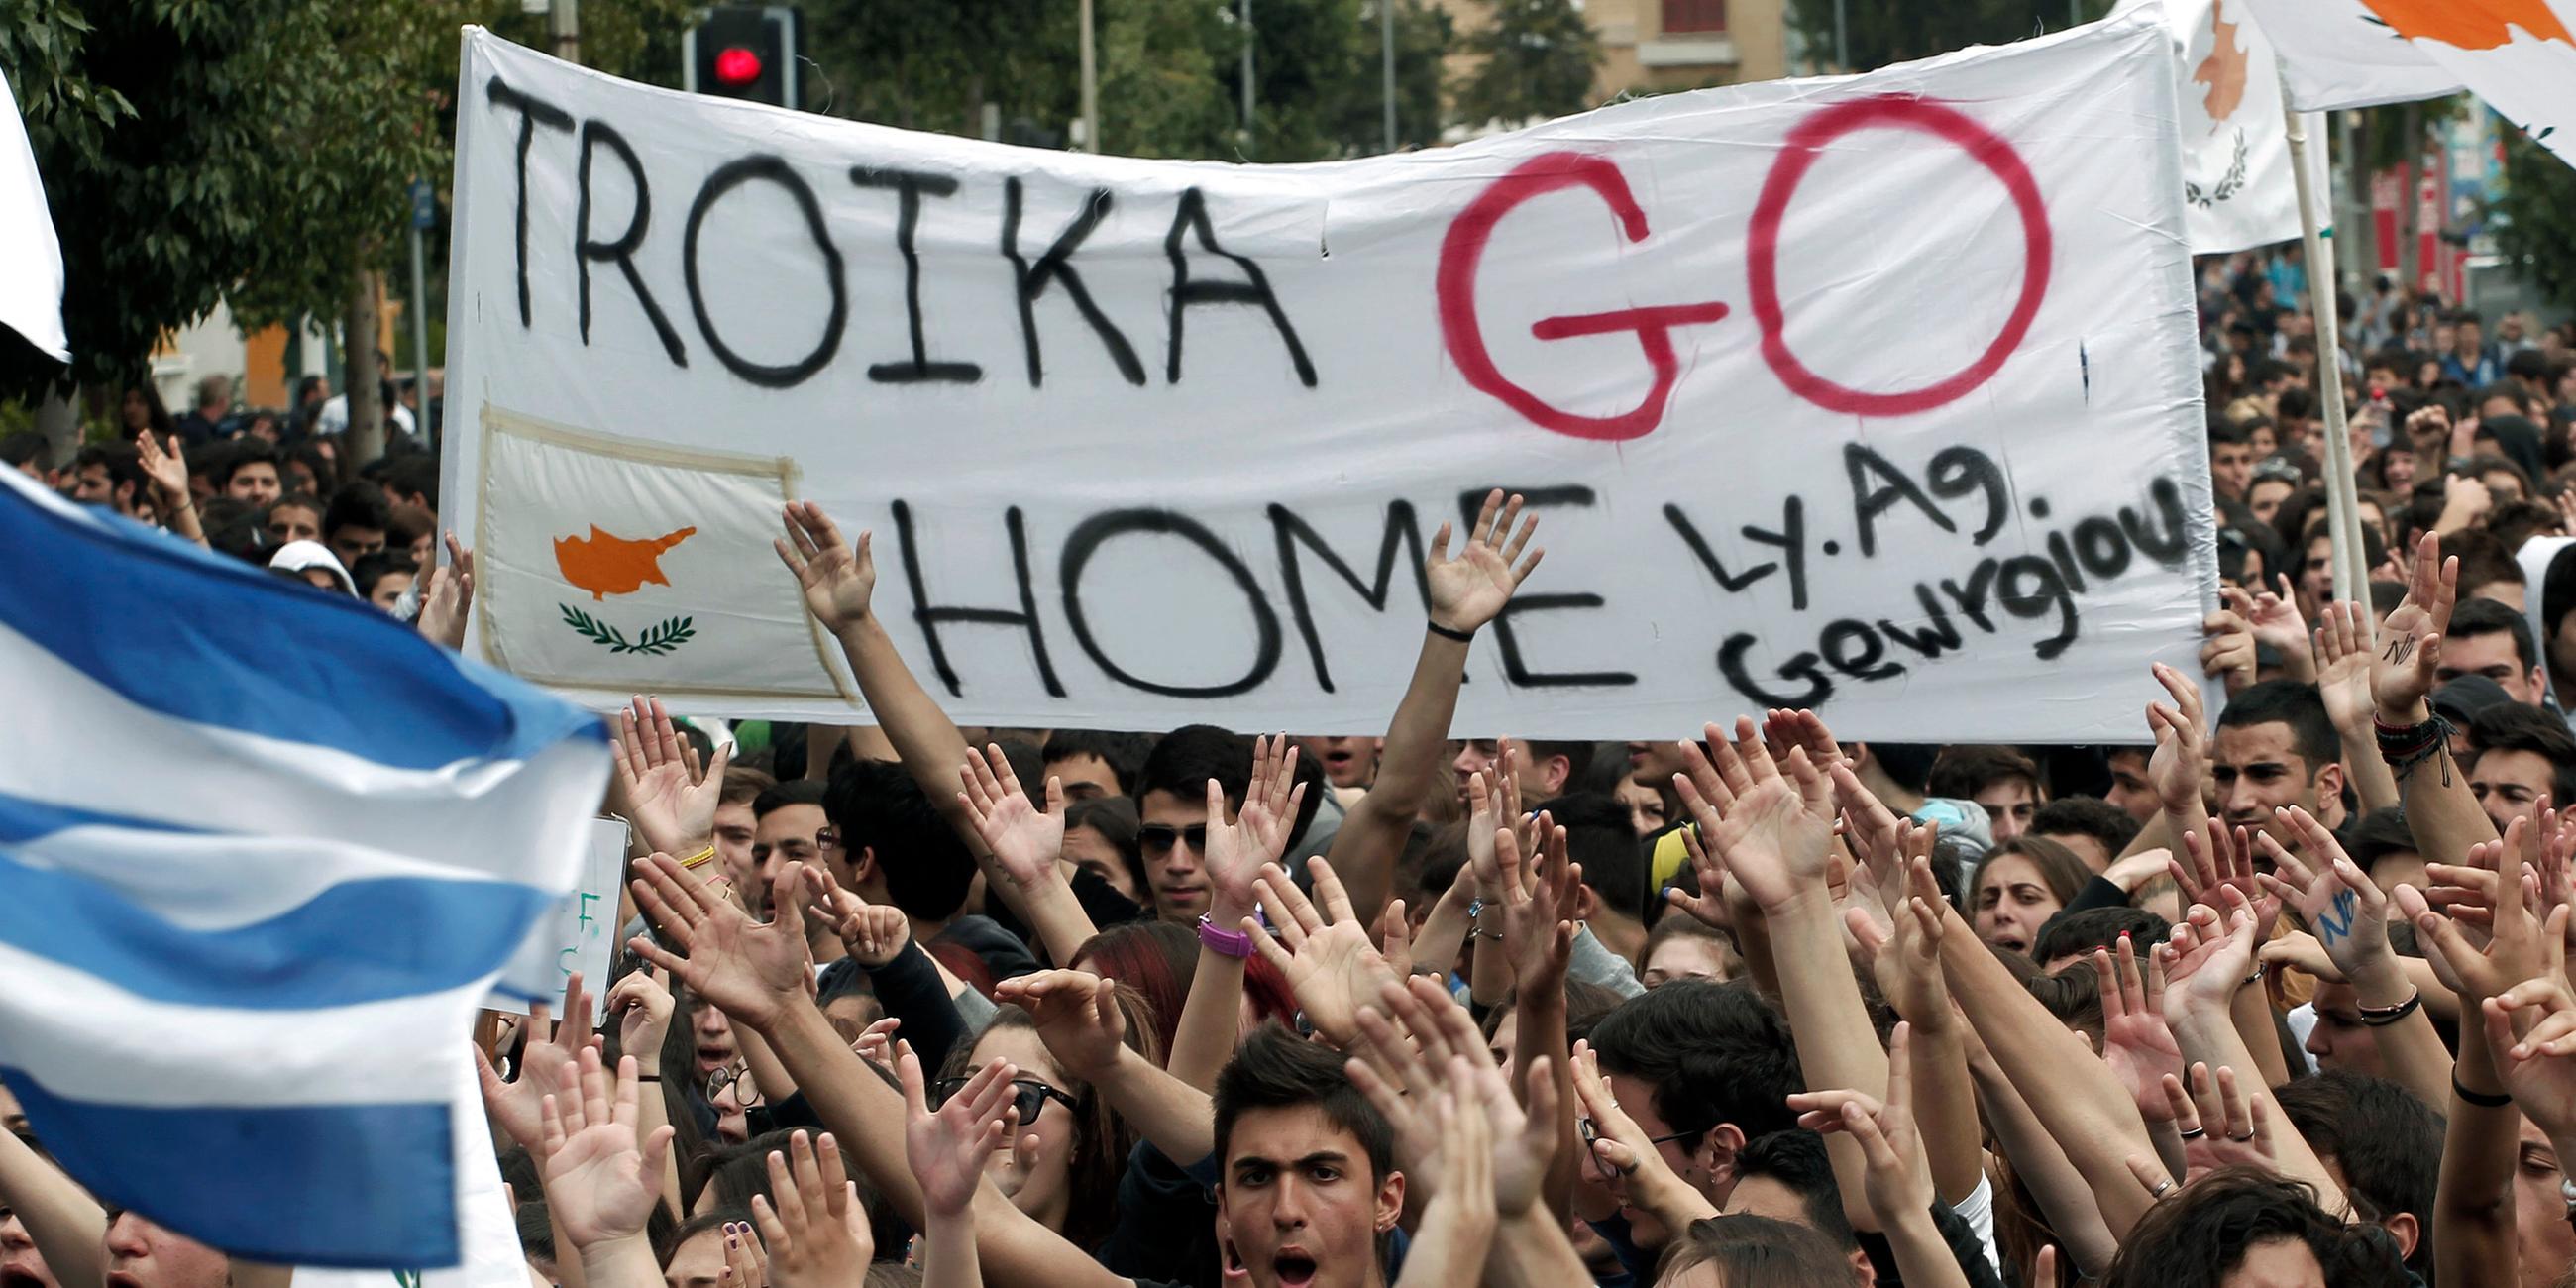 studenten demonstrieren auf zypern - 2013